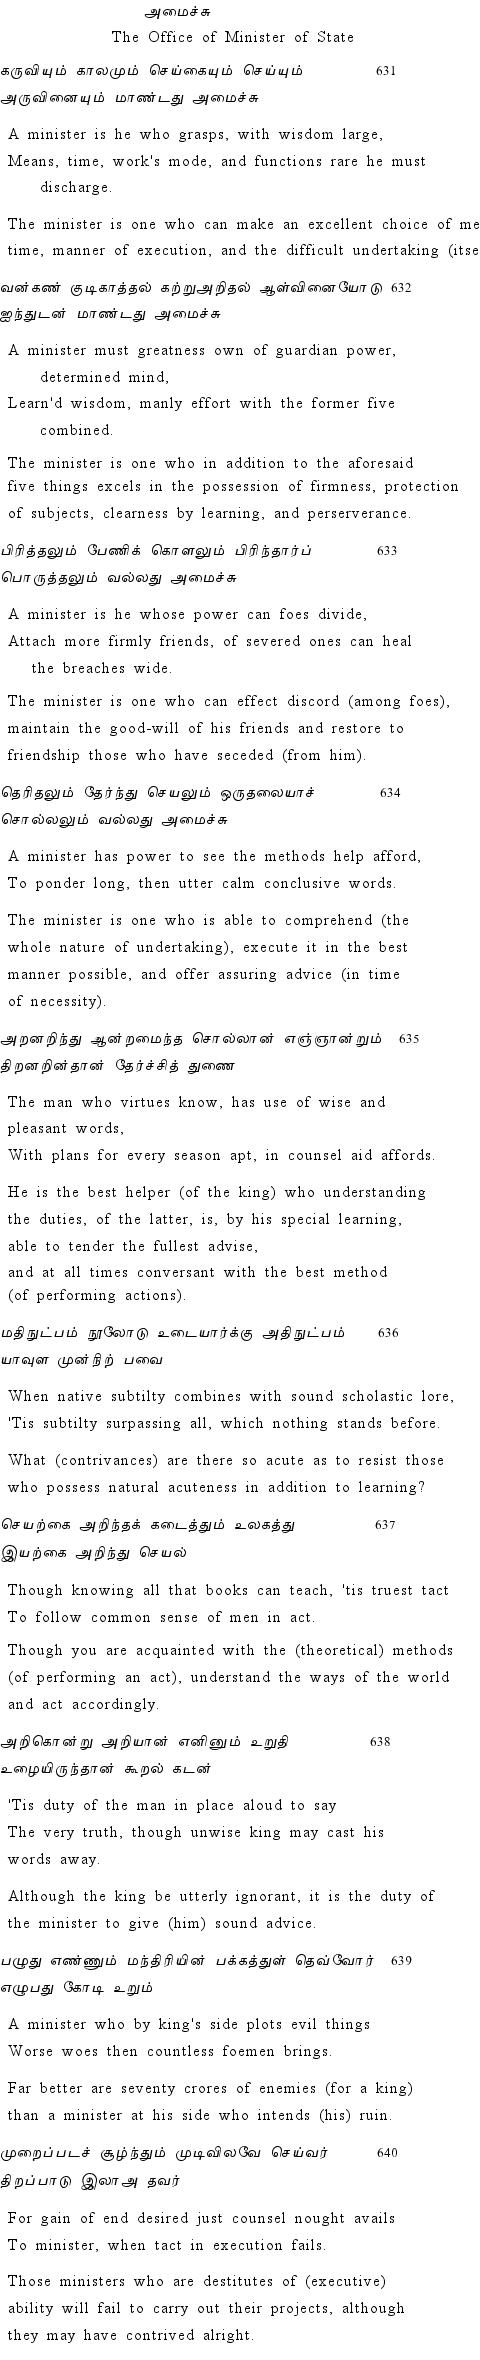 Text of Adhikaram 64